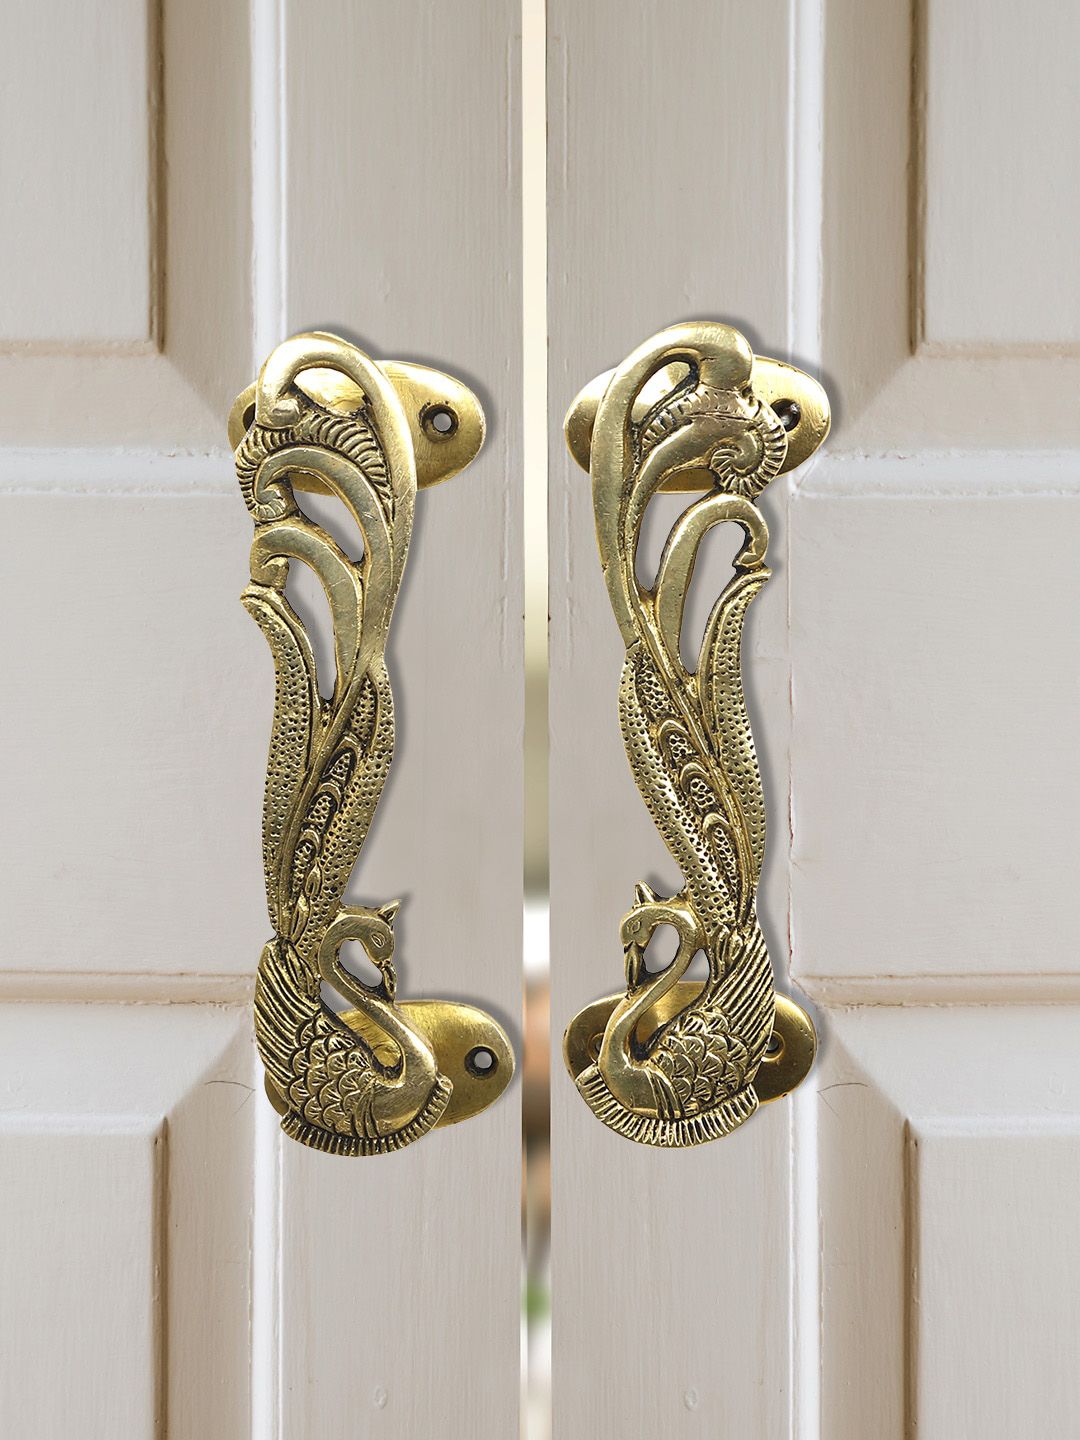 Imli Street Set Of 2 Gold-Toned Peacock Design Door Handles Price in India